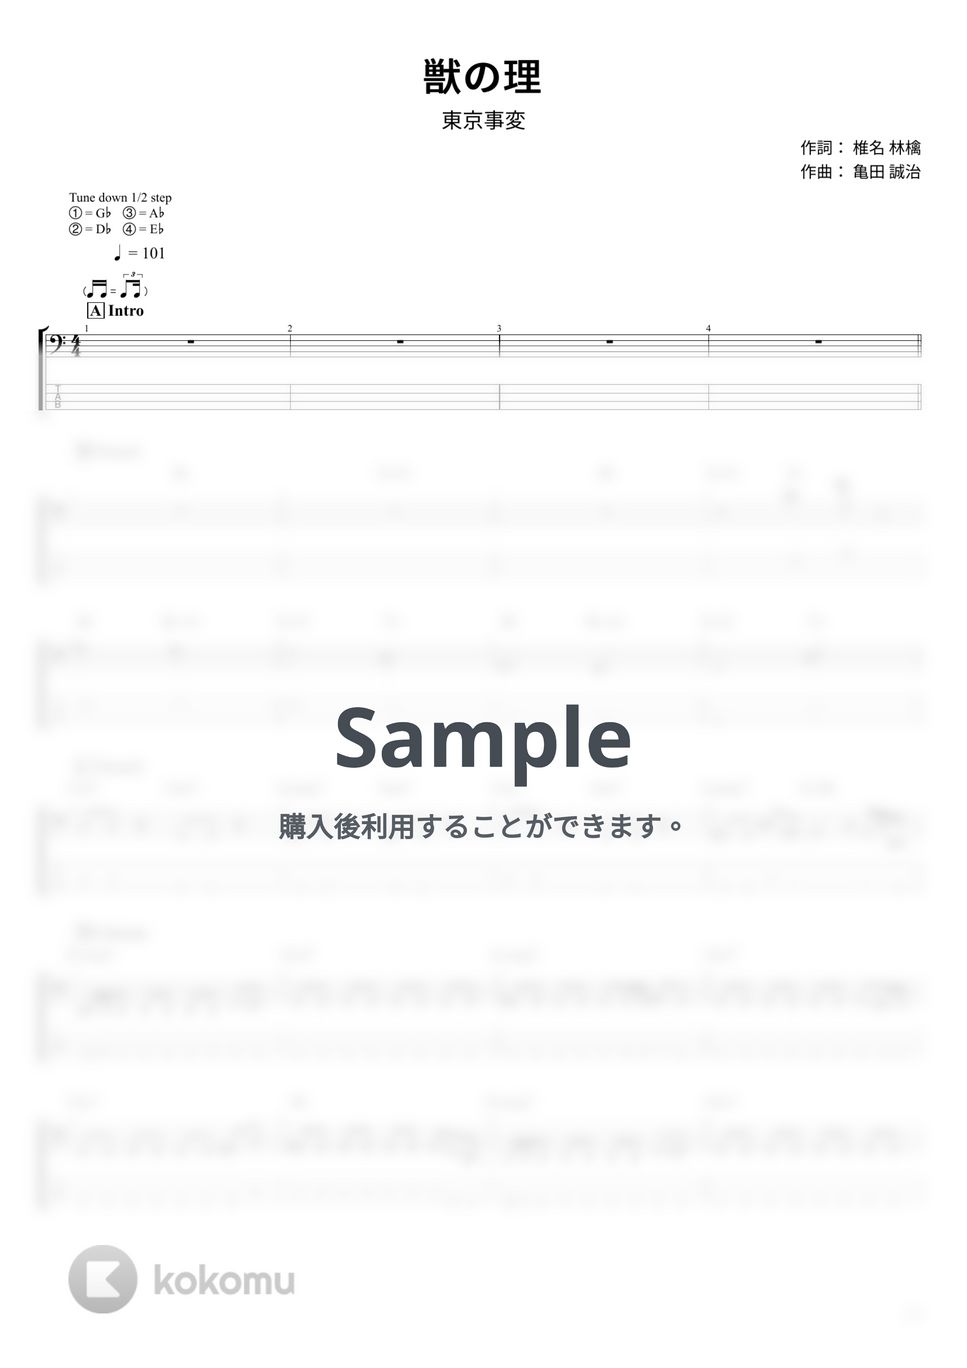 東京事変 - 獣の理 (ベース Tab譜 4弦) by T's bass score